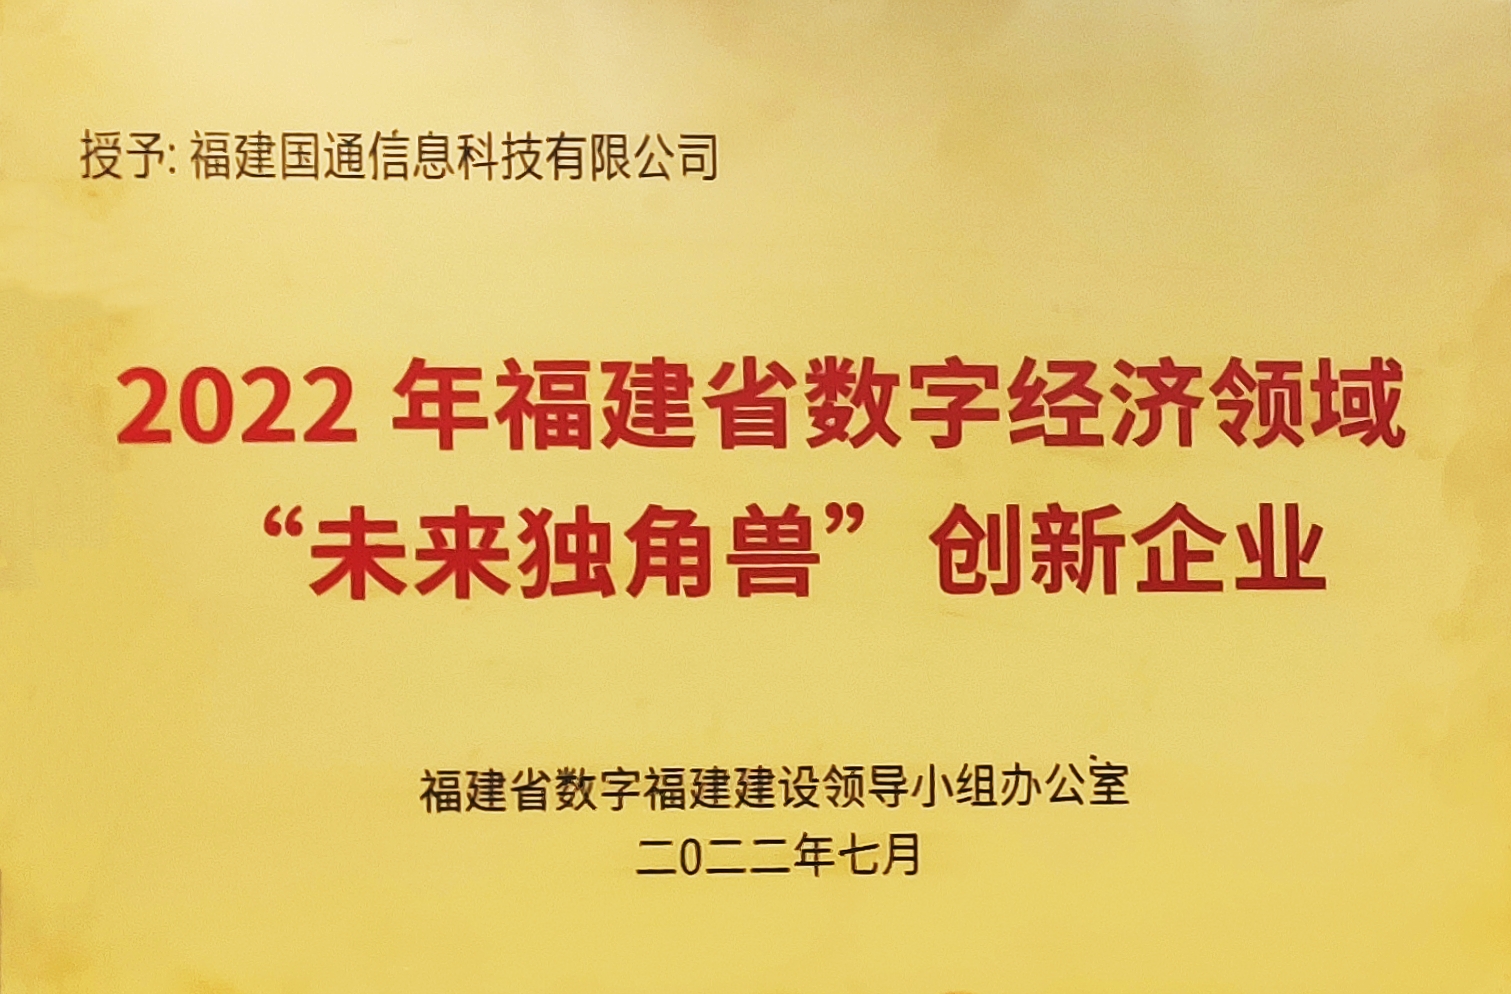 2022年福建省數字經(jīng)濟領域“未來獨角獸”創新企業